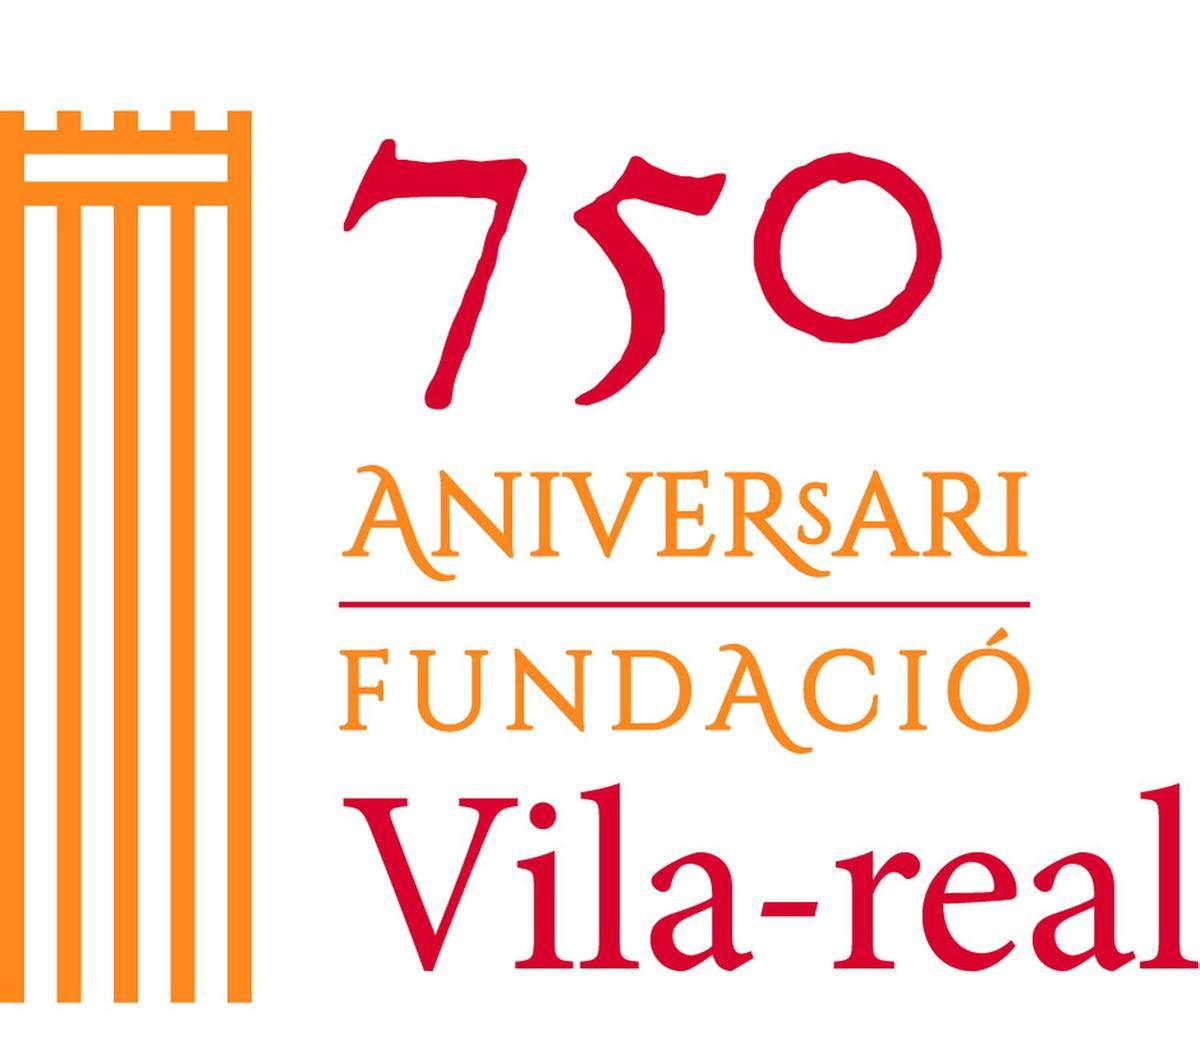 Este es el logotipo creado para conmemorar el 750º aniversario de la fundación de Vila-real.